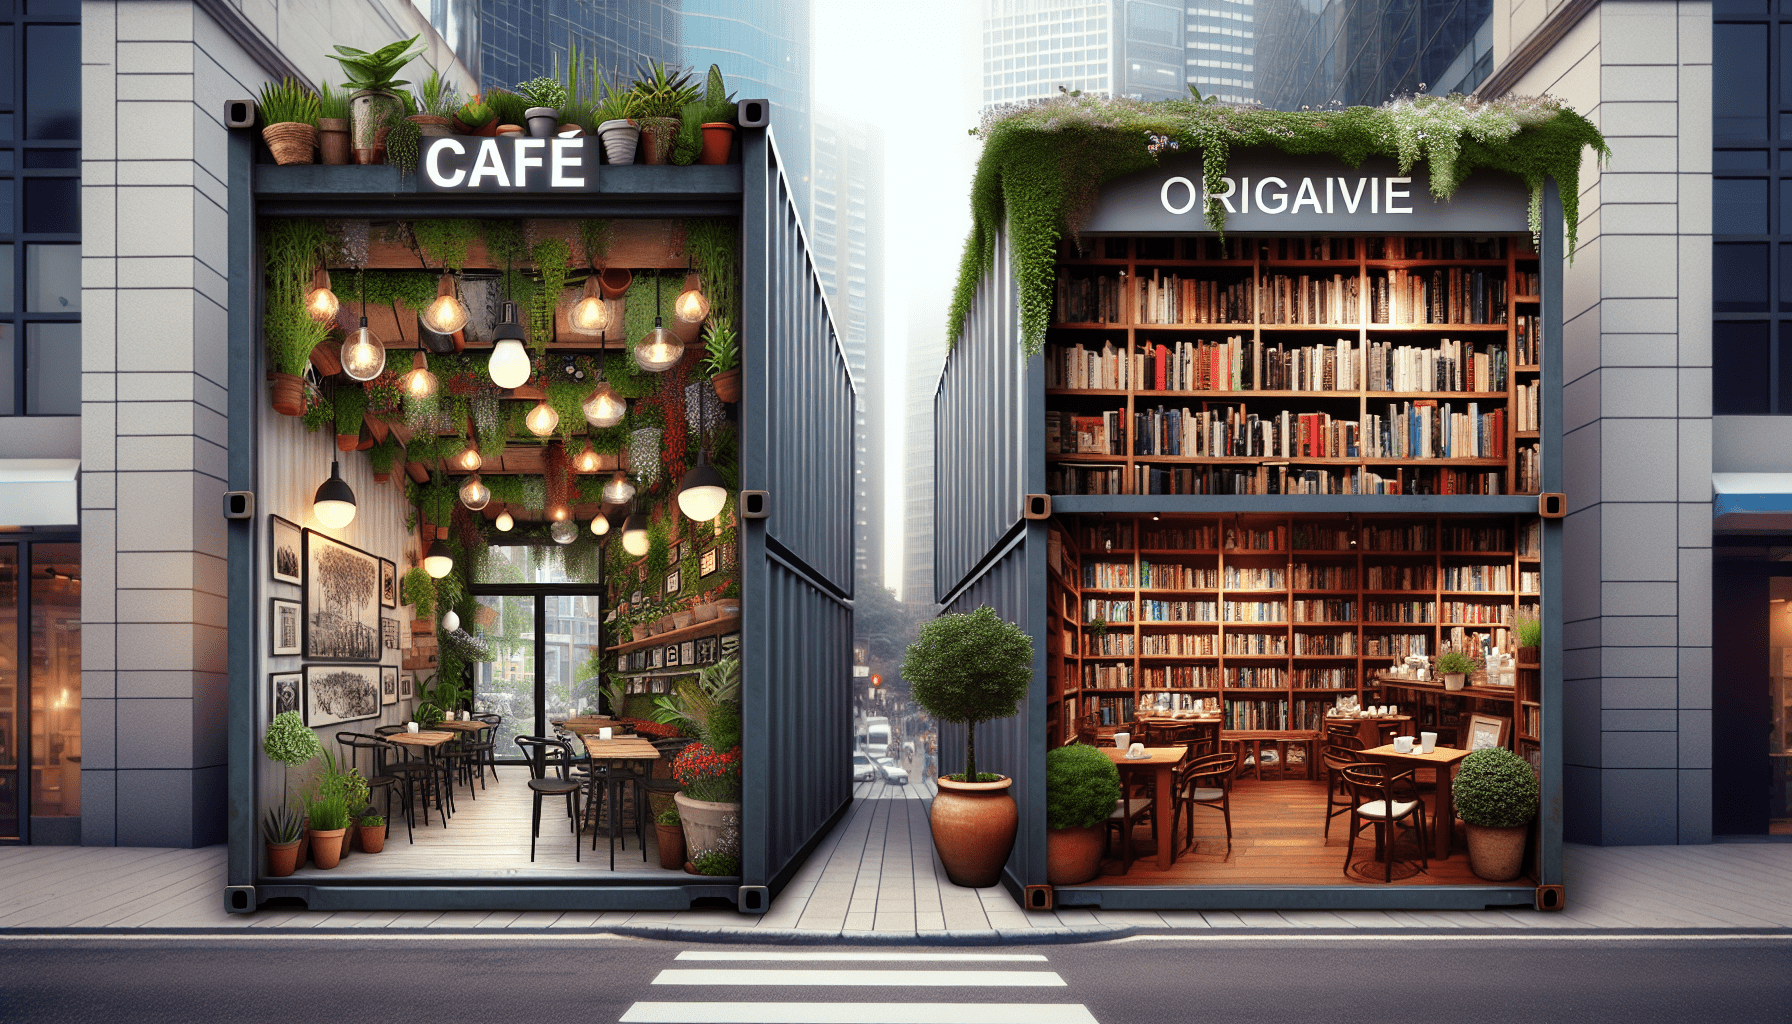 Top 10 Unique Cafe Business Ideas